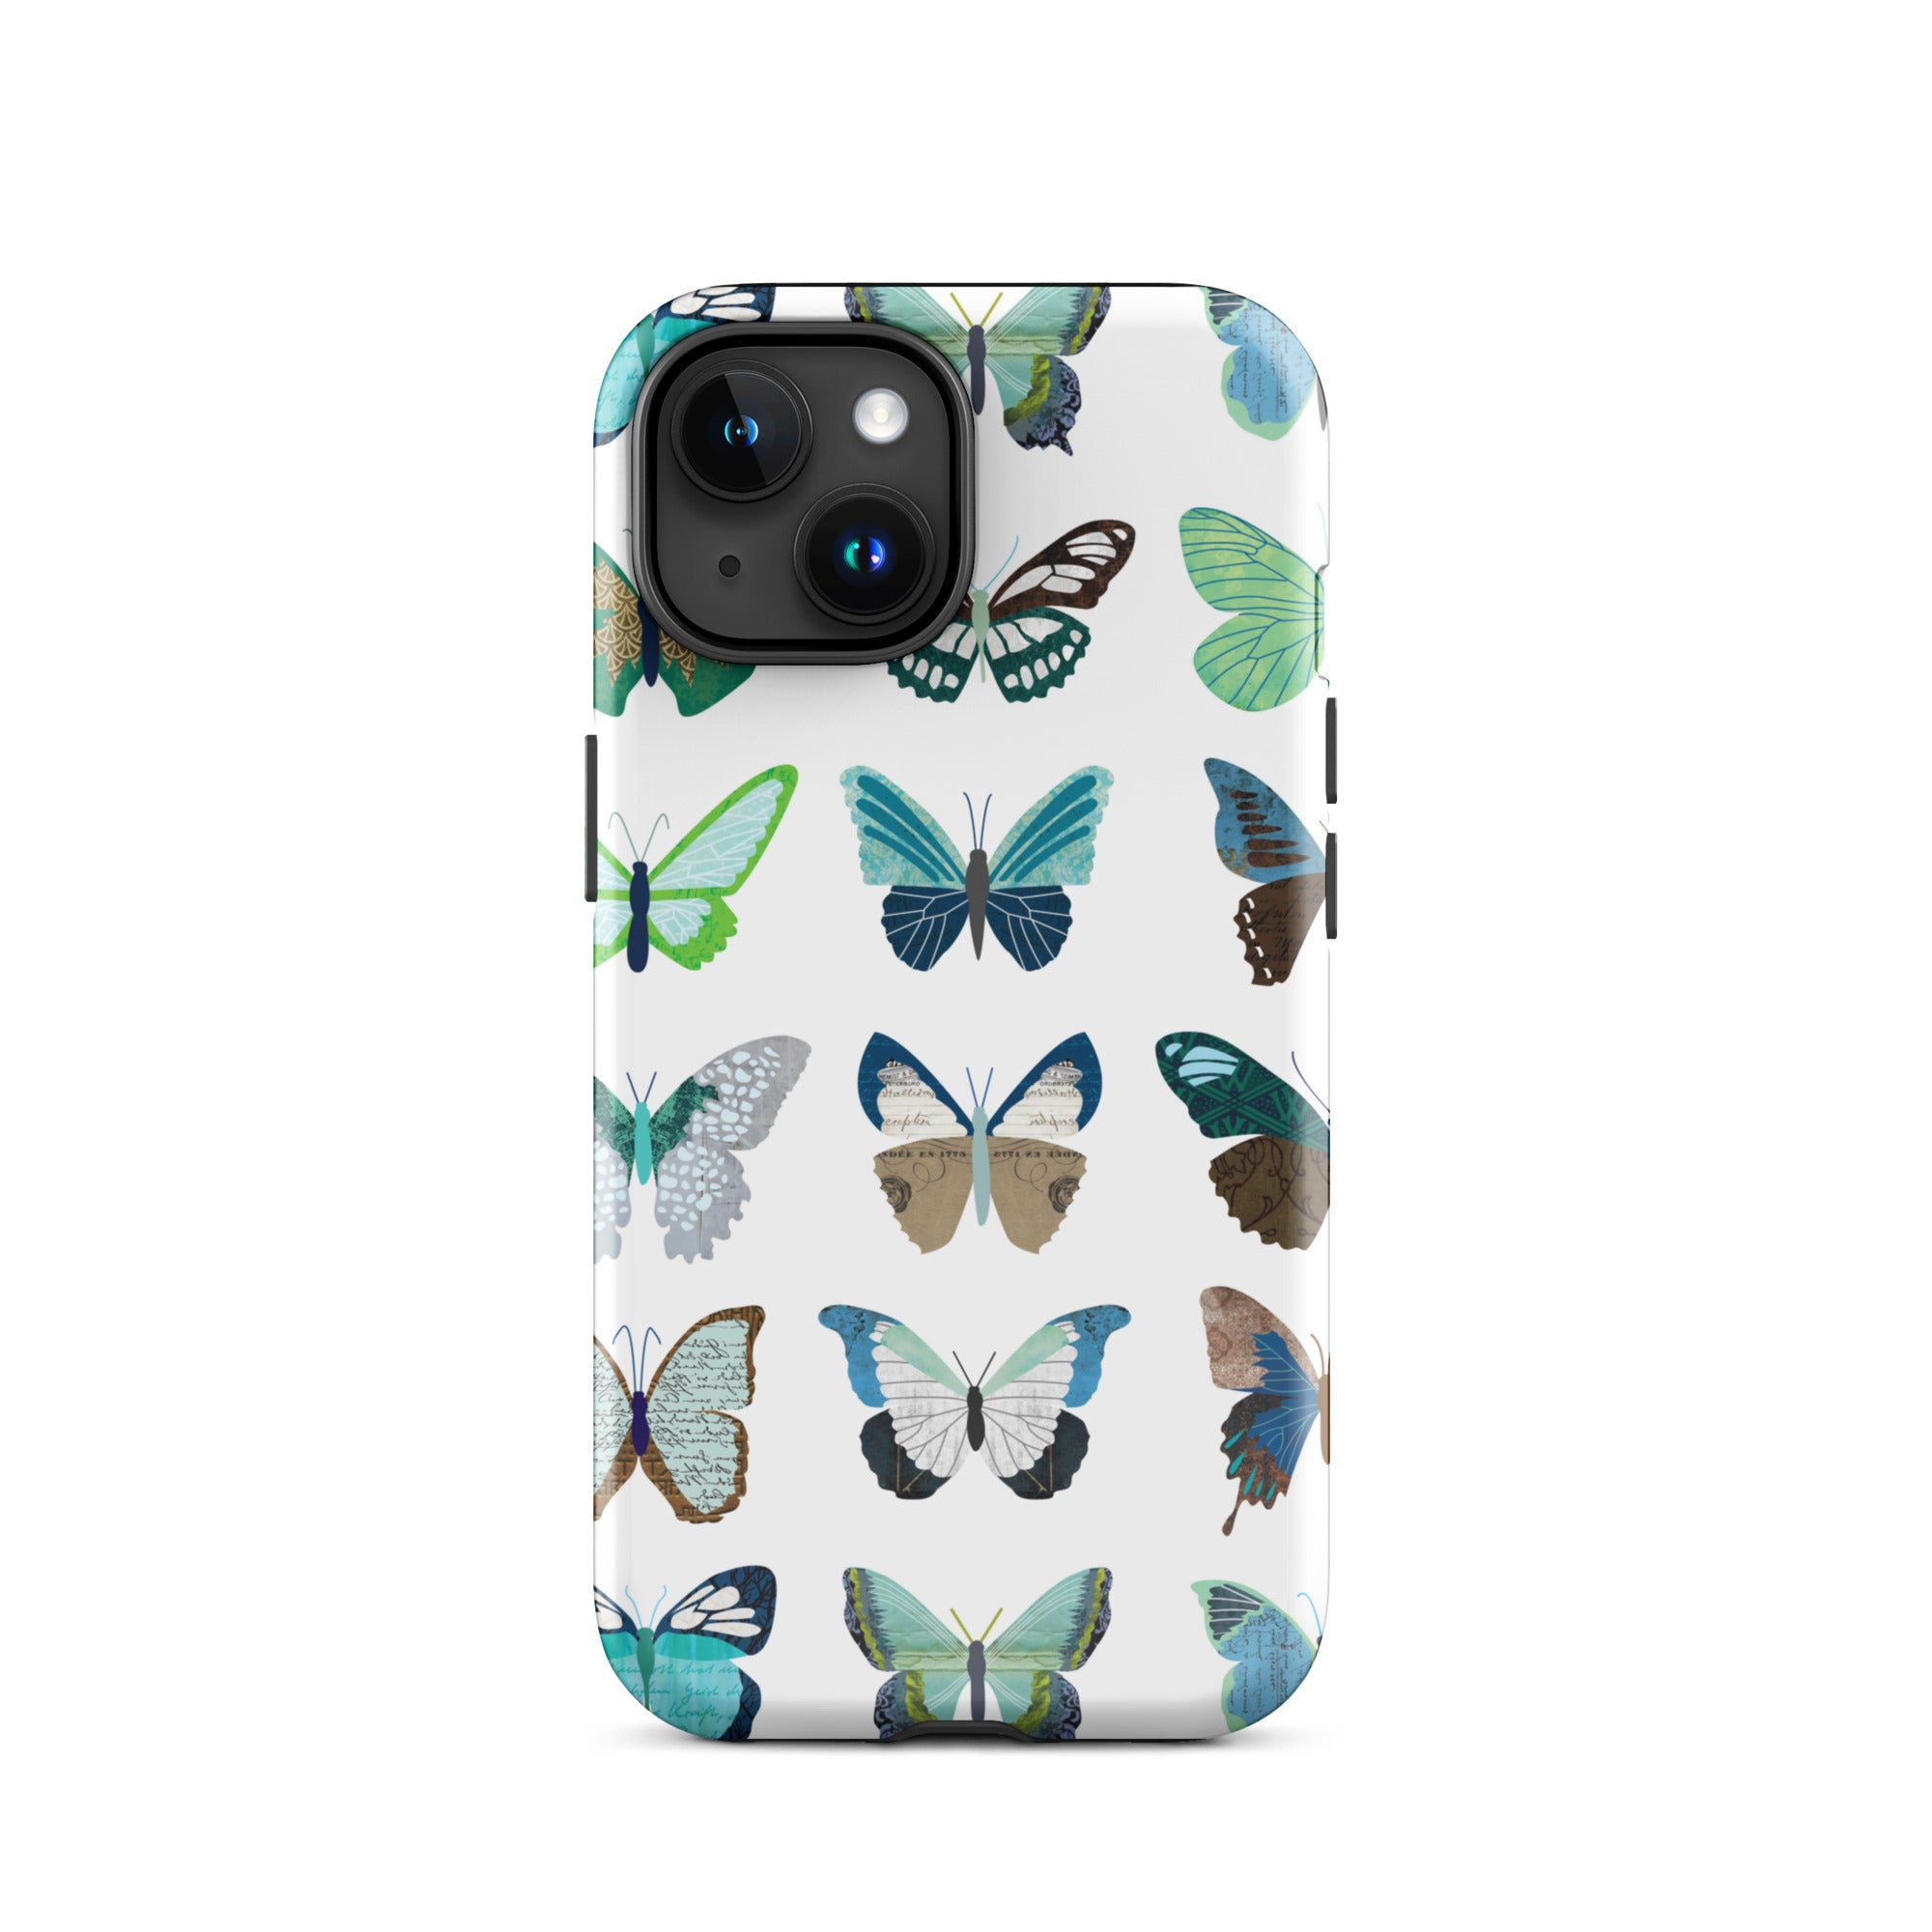 Mariposas verdes y azules - Funda resistente para iPhone®